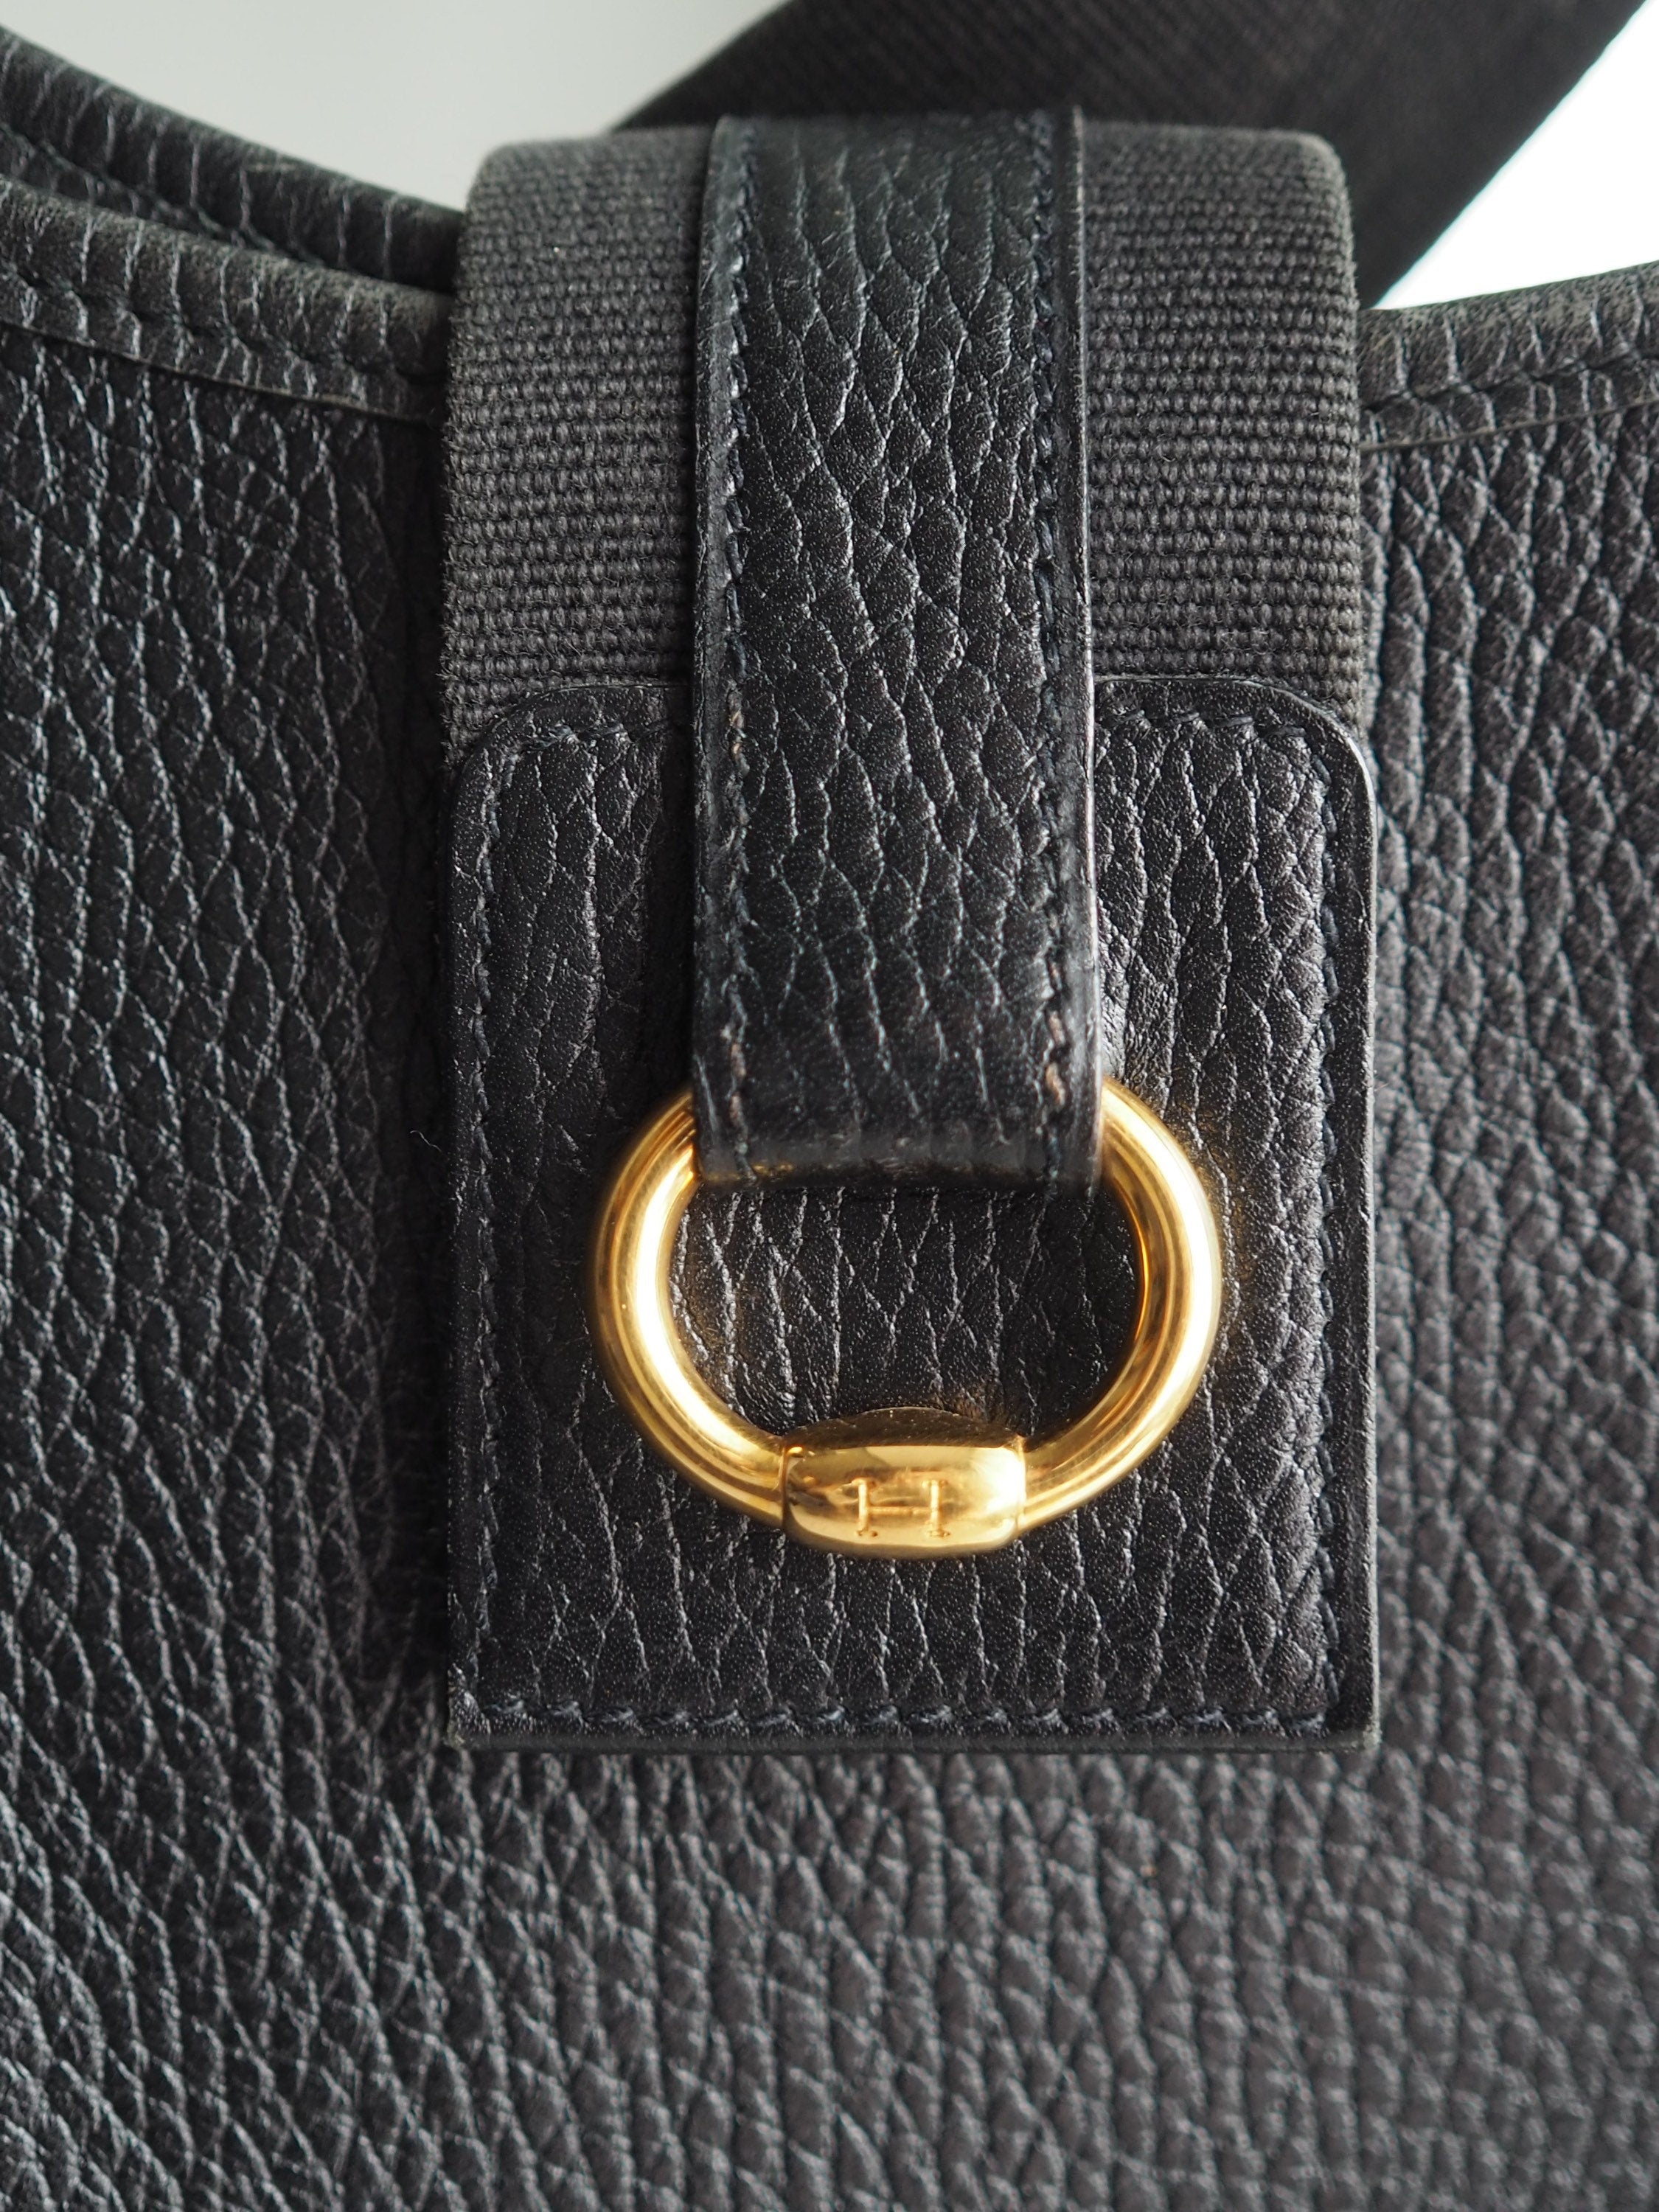 HERMES Sako Shoulder Bags Trillon Clemence Bag Black/Gold Fittings AuthenticVintage